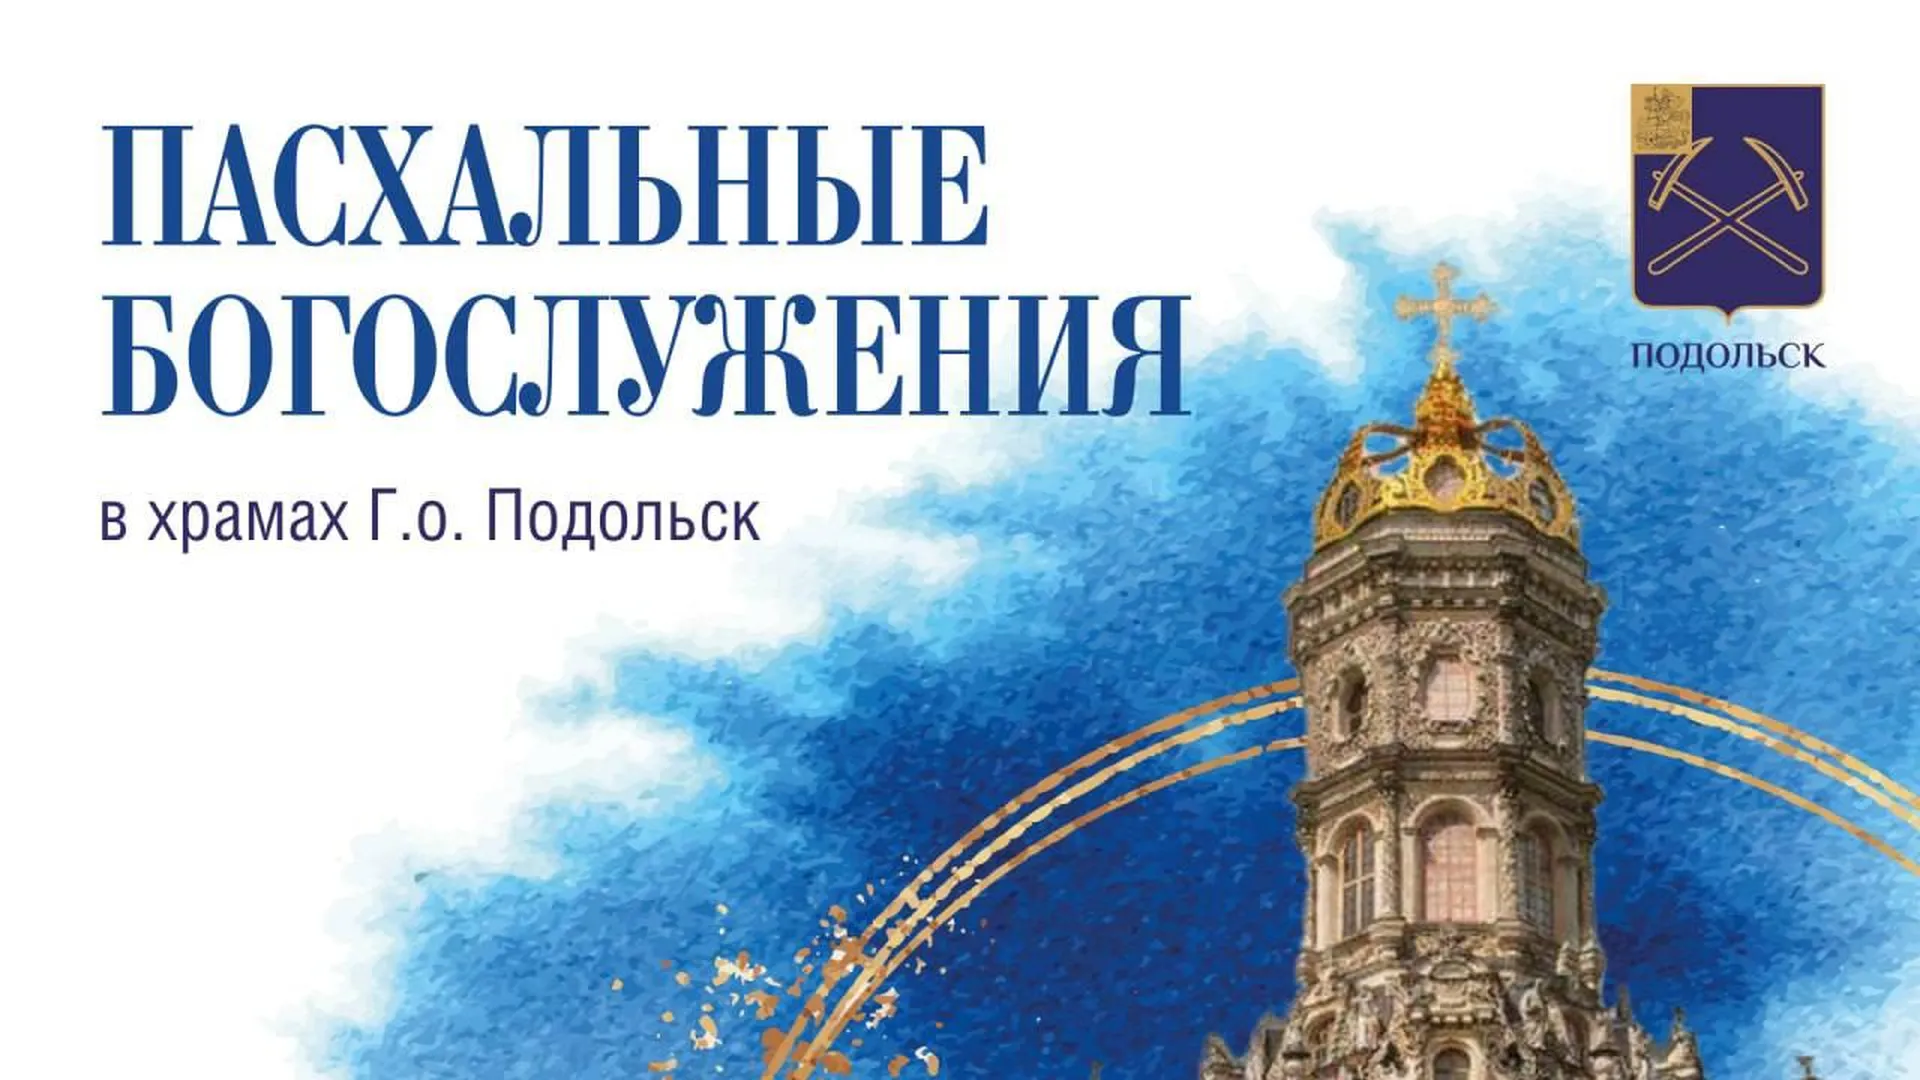 Пасхальные богослужения пройдут в 26 храмах Подольска 4 и 5 мая